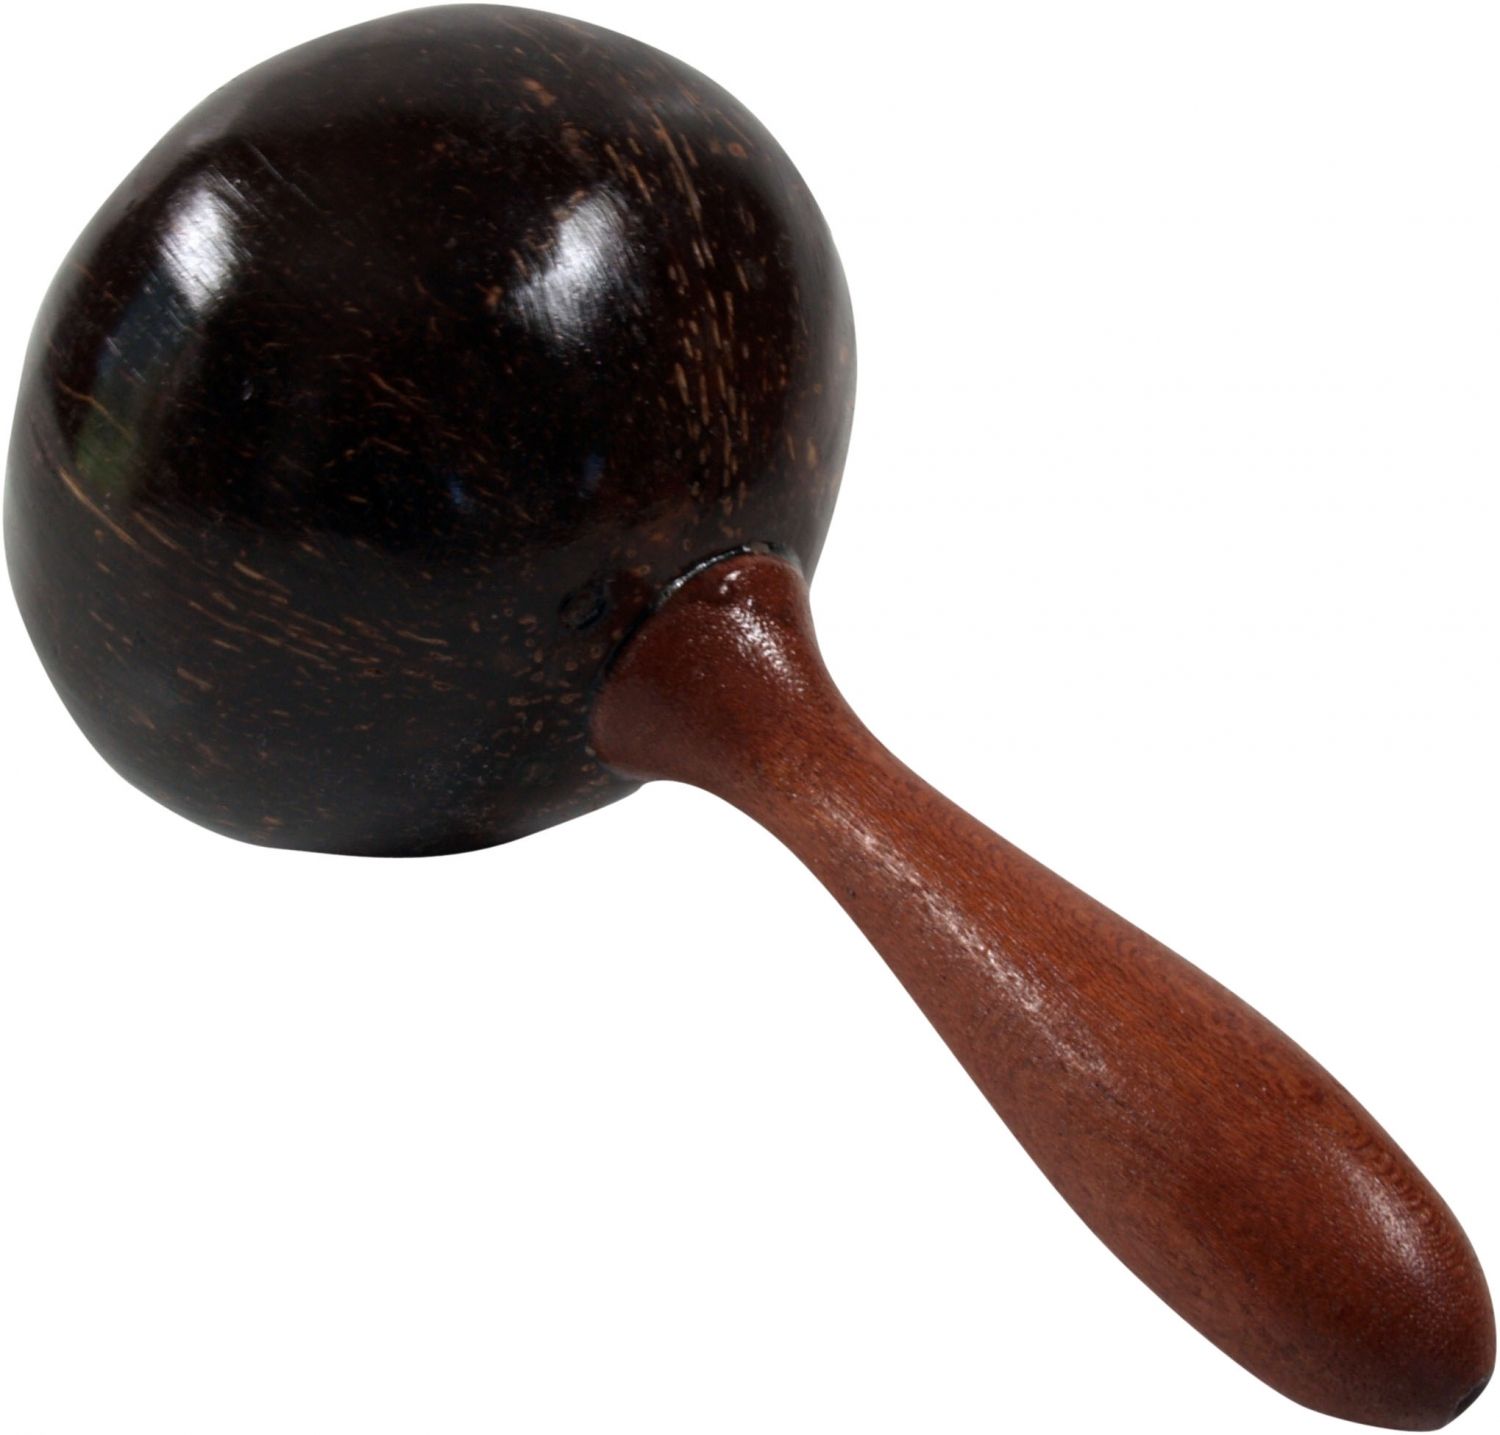 Drewniany instrument muzyczny, rytmiczny instrument perkusyjny, ręcznie robiony - grzechotka kokosowa